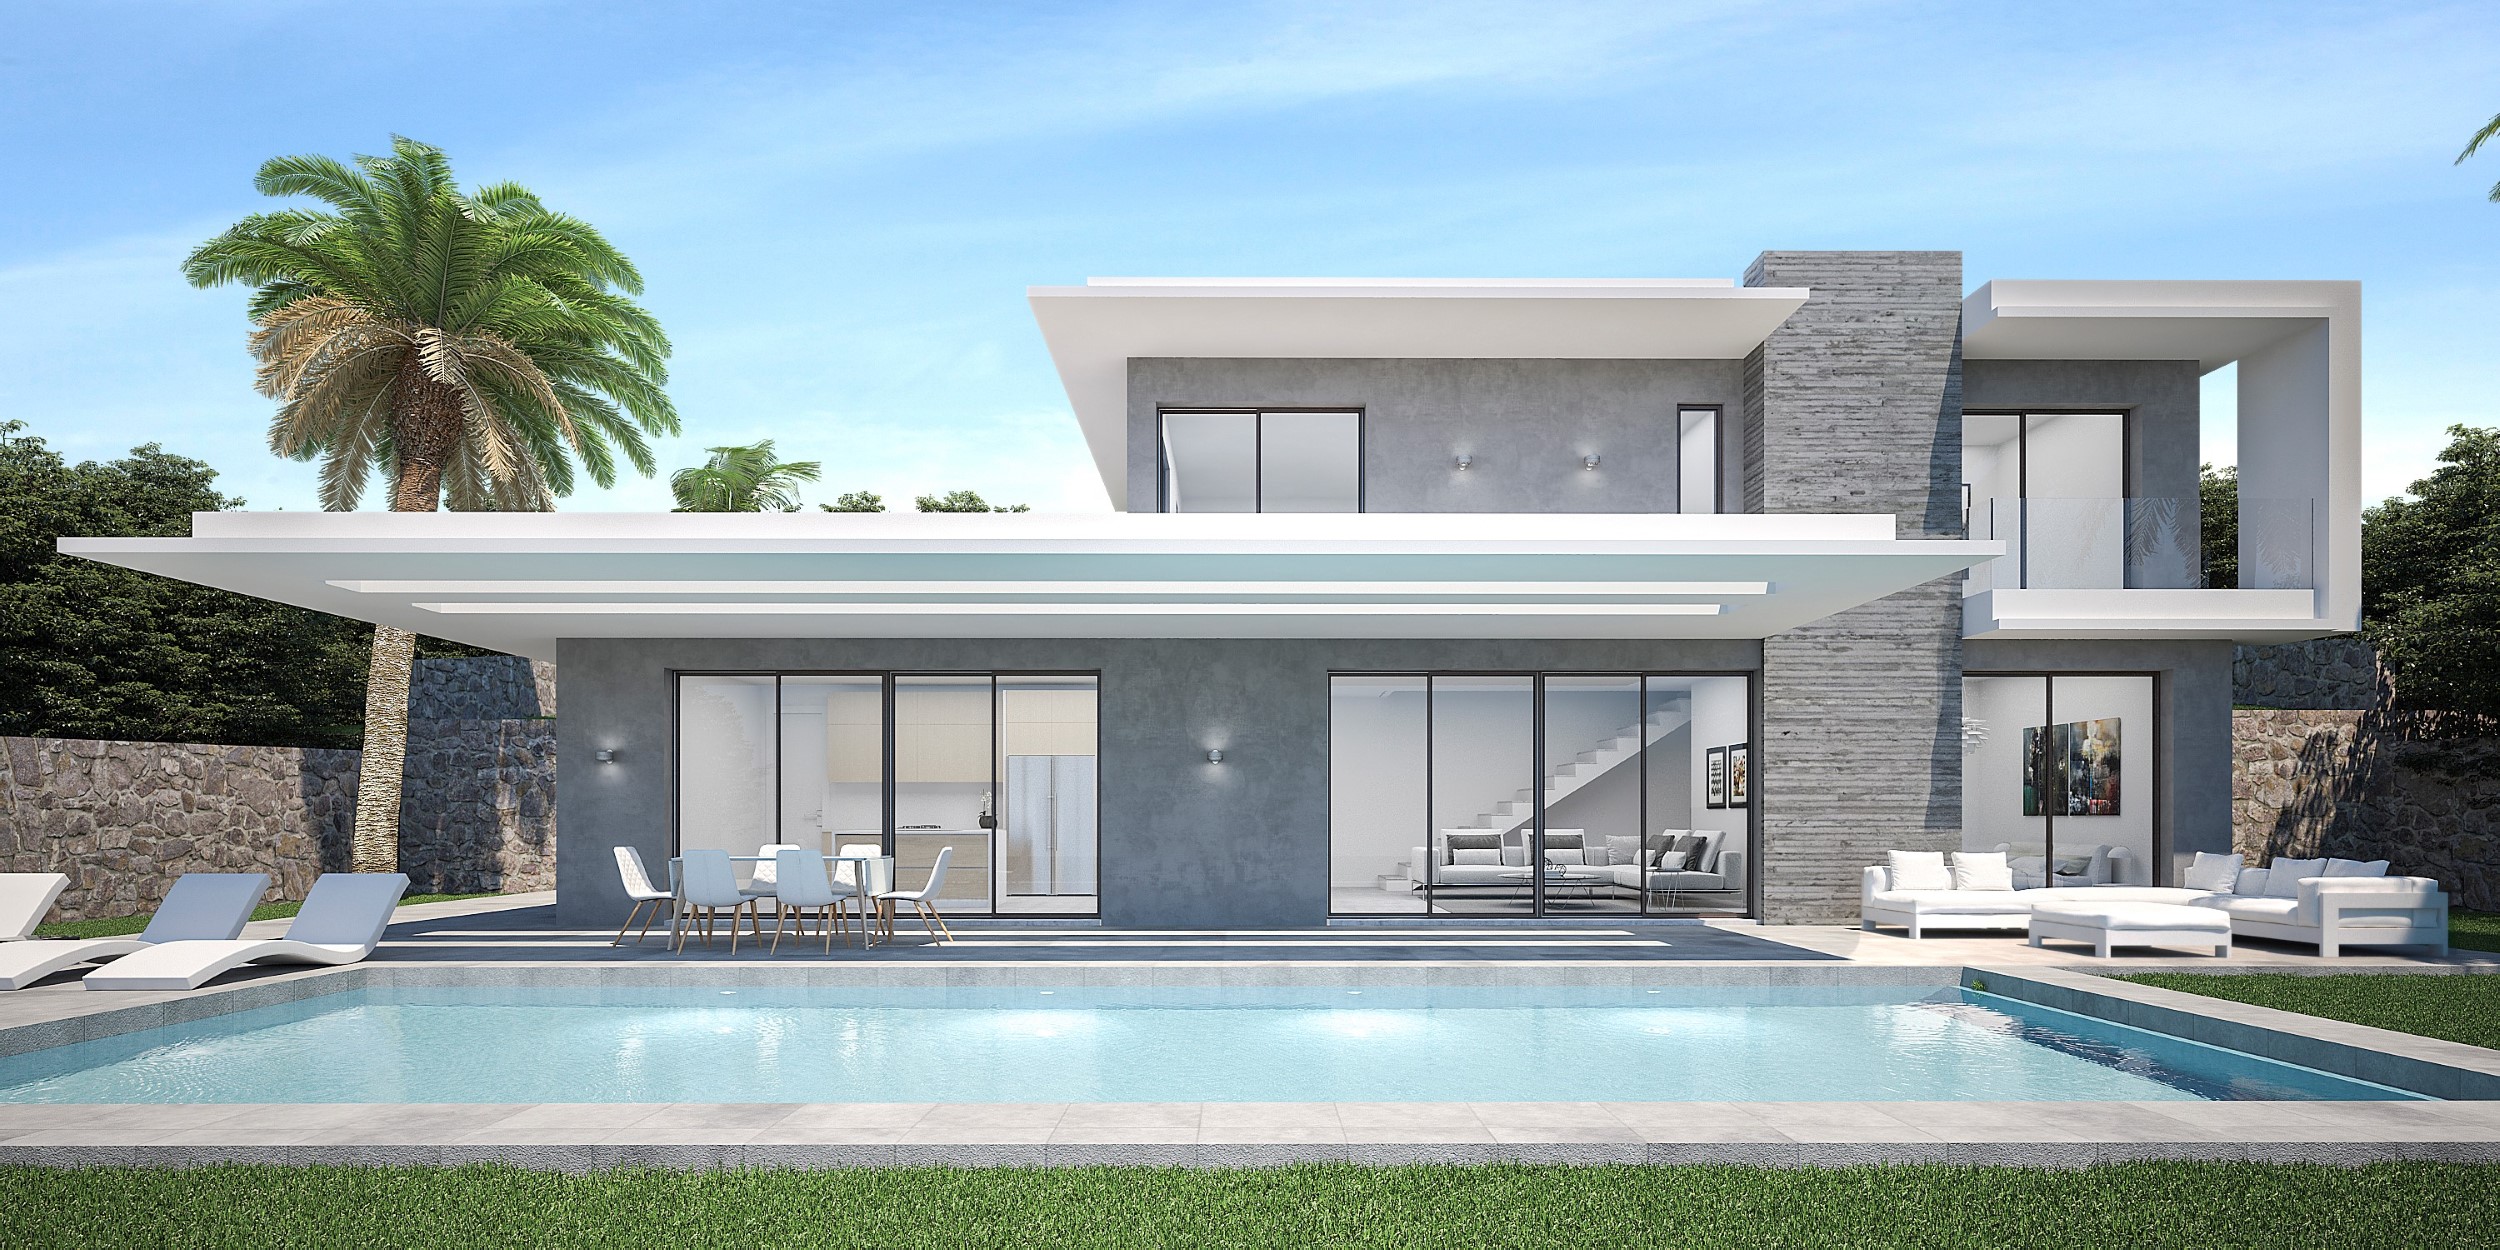 New to build 3 bedroom villa in Javea